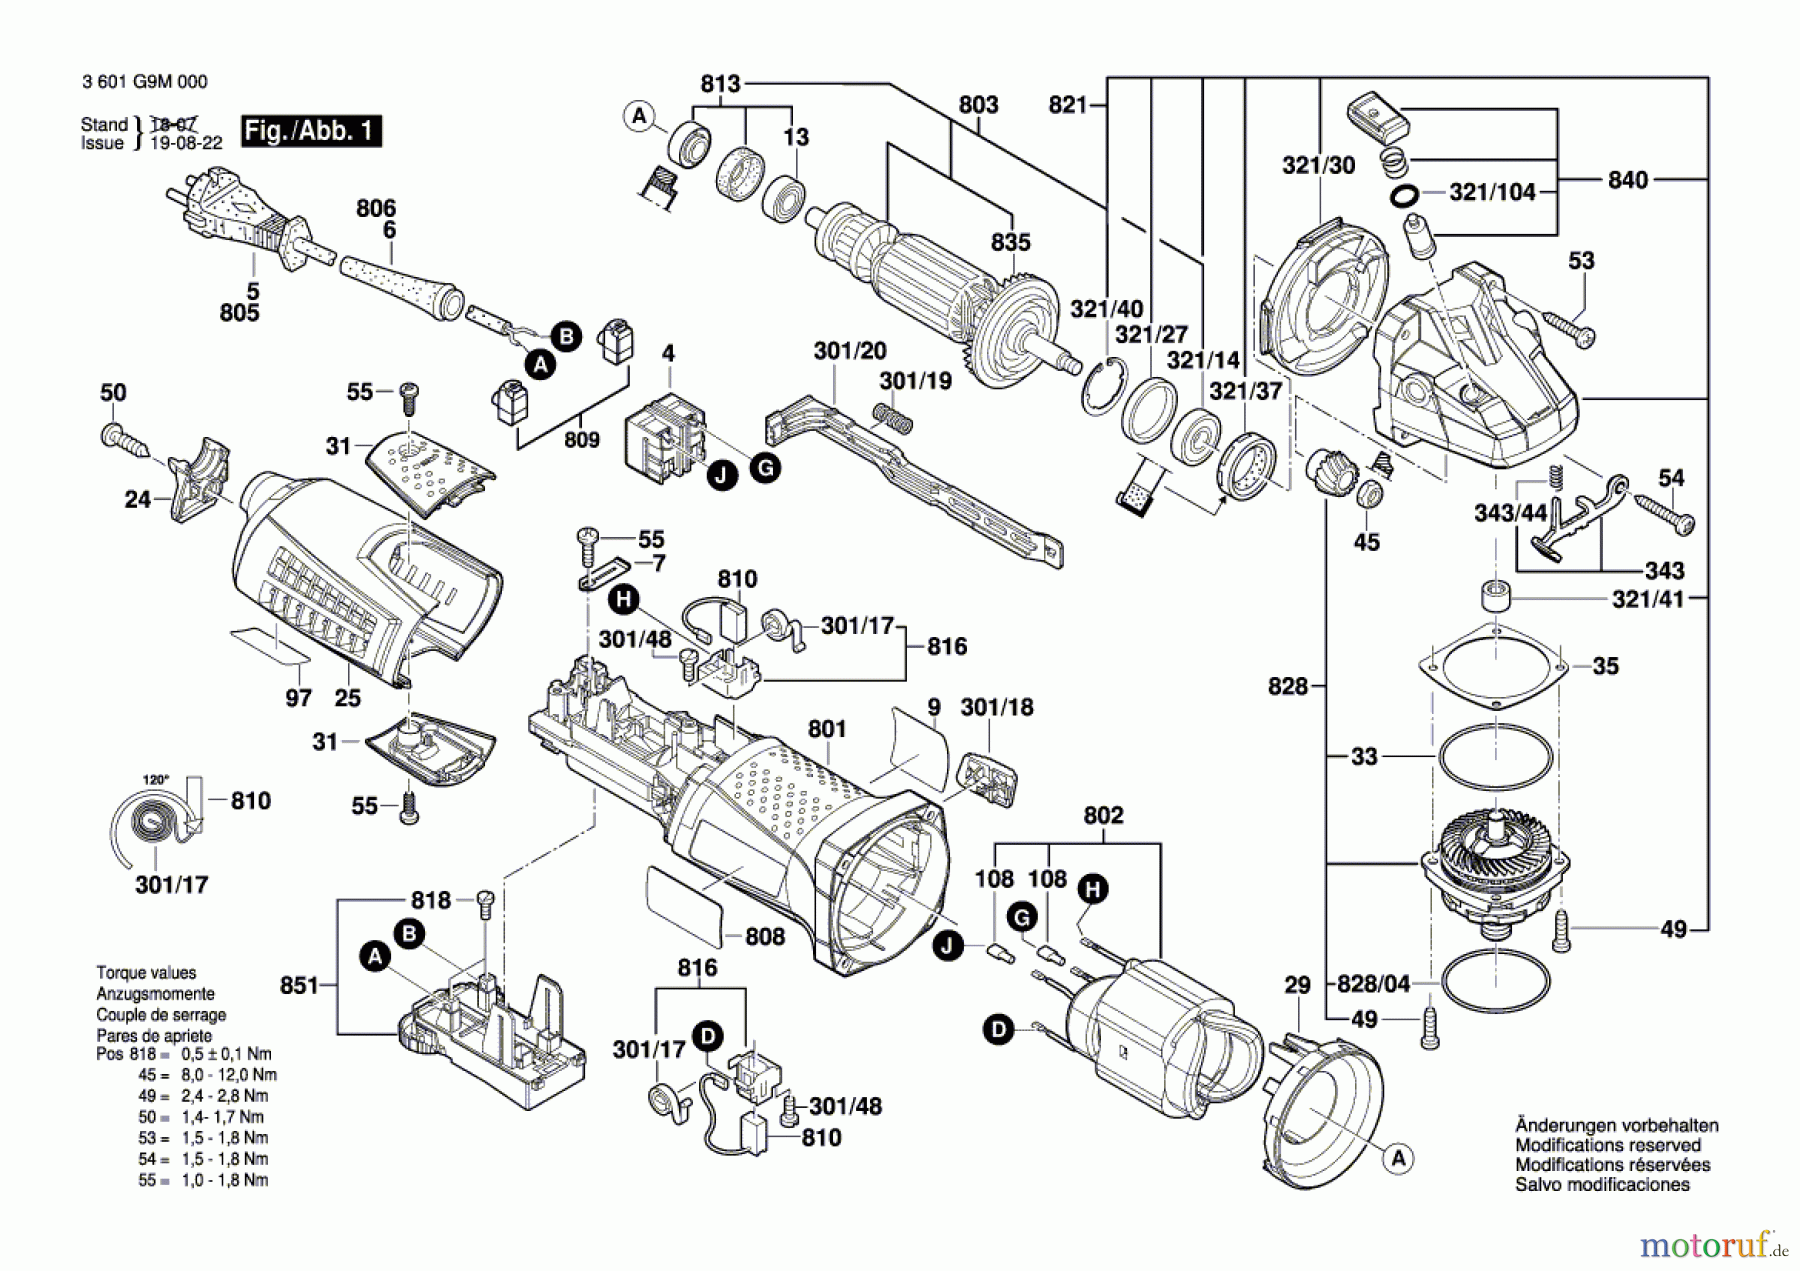  Bosch Werkzeug Winkelschleifer GWS 17-125 INOX Seite 1